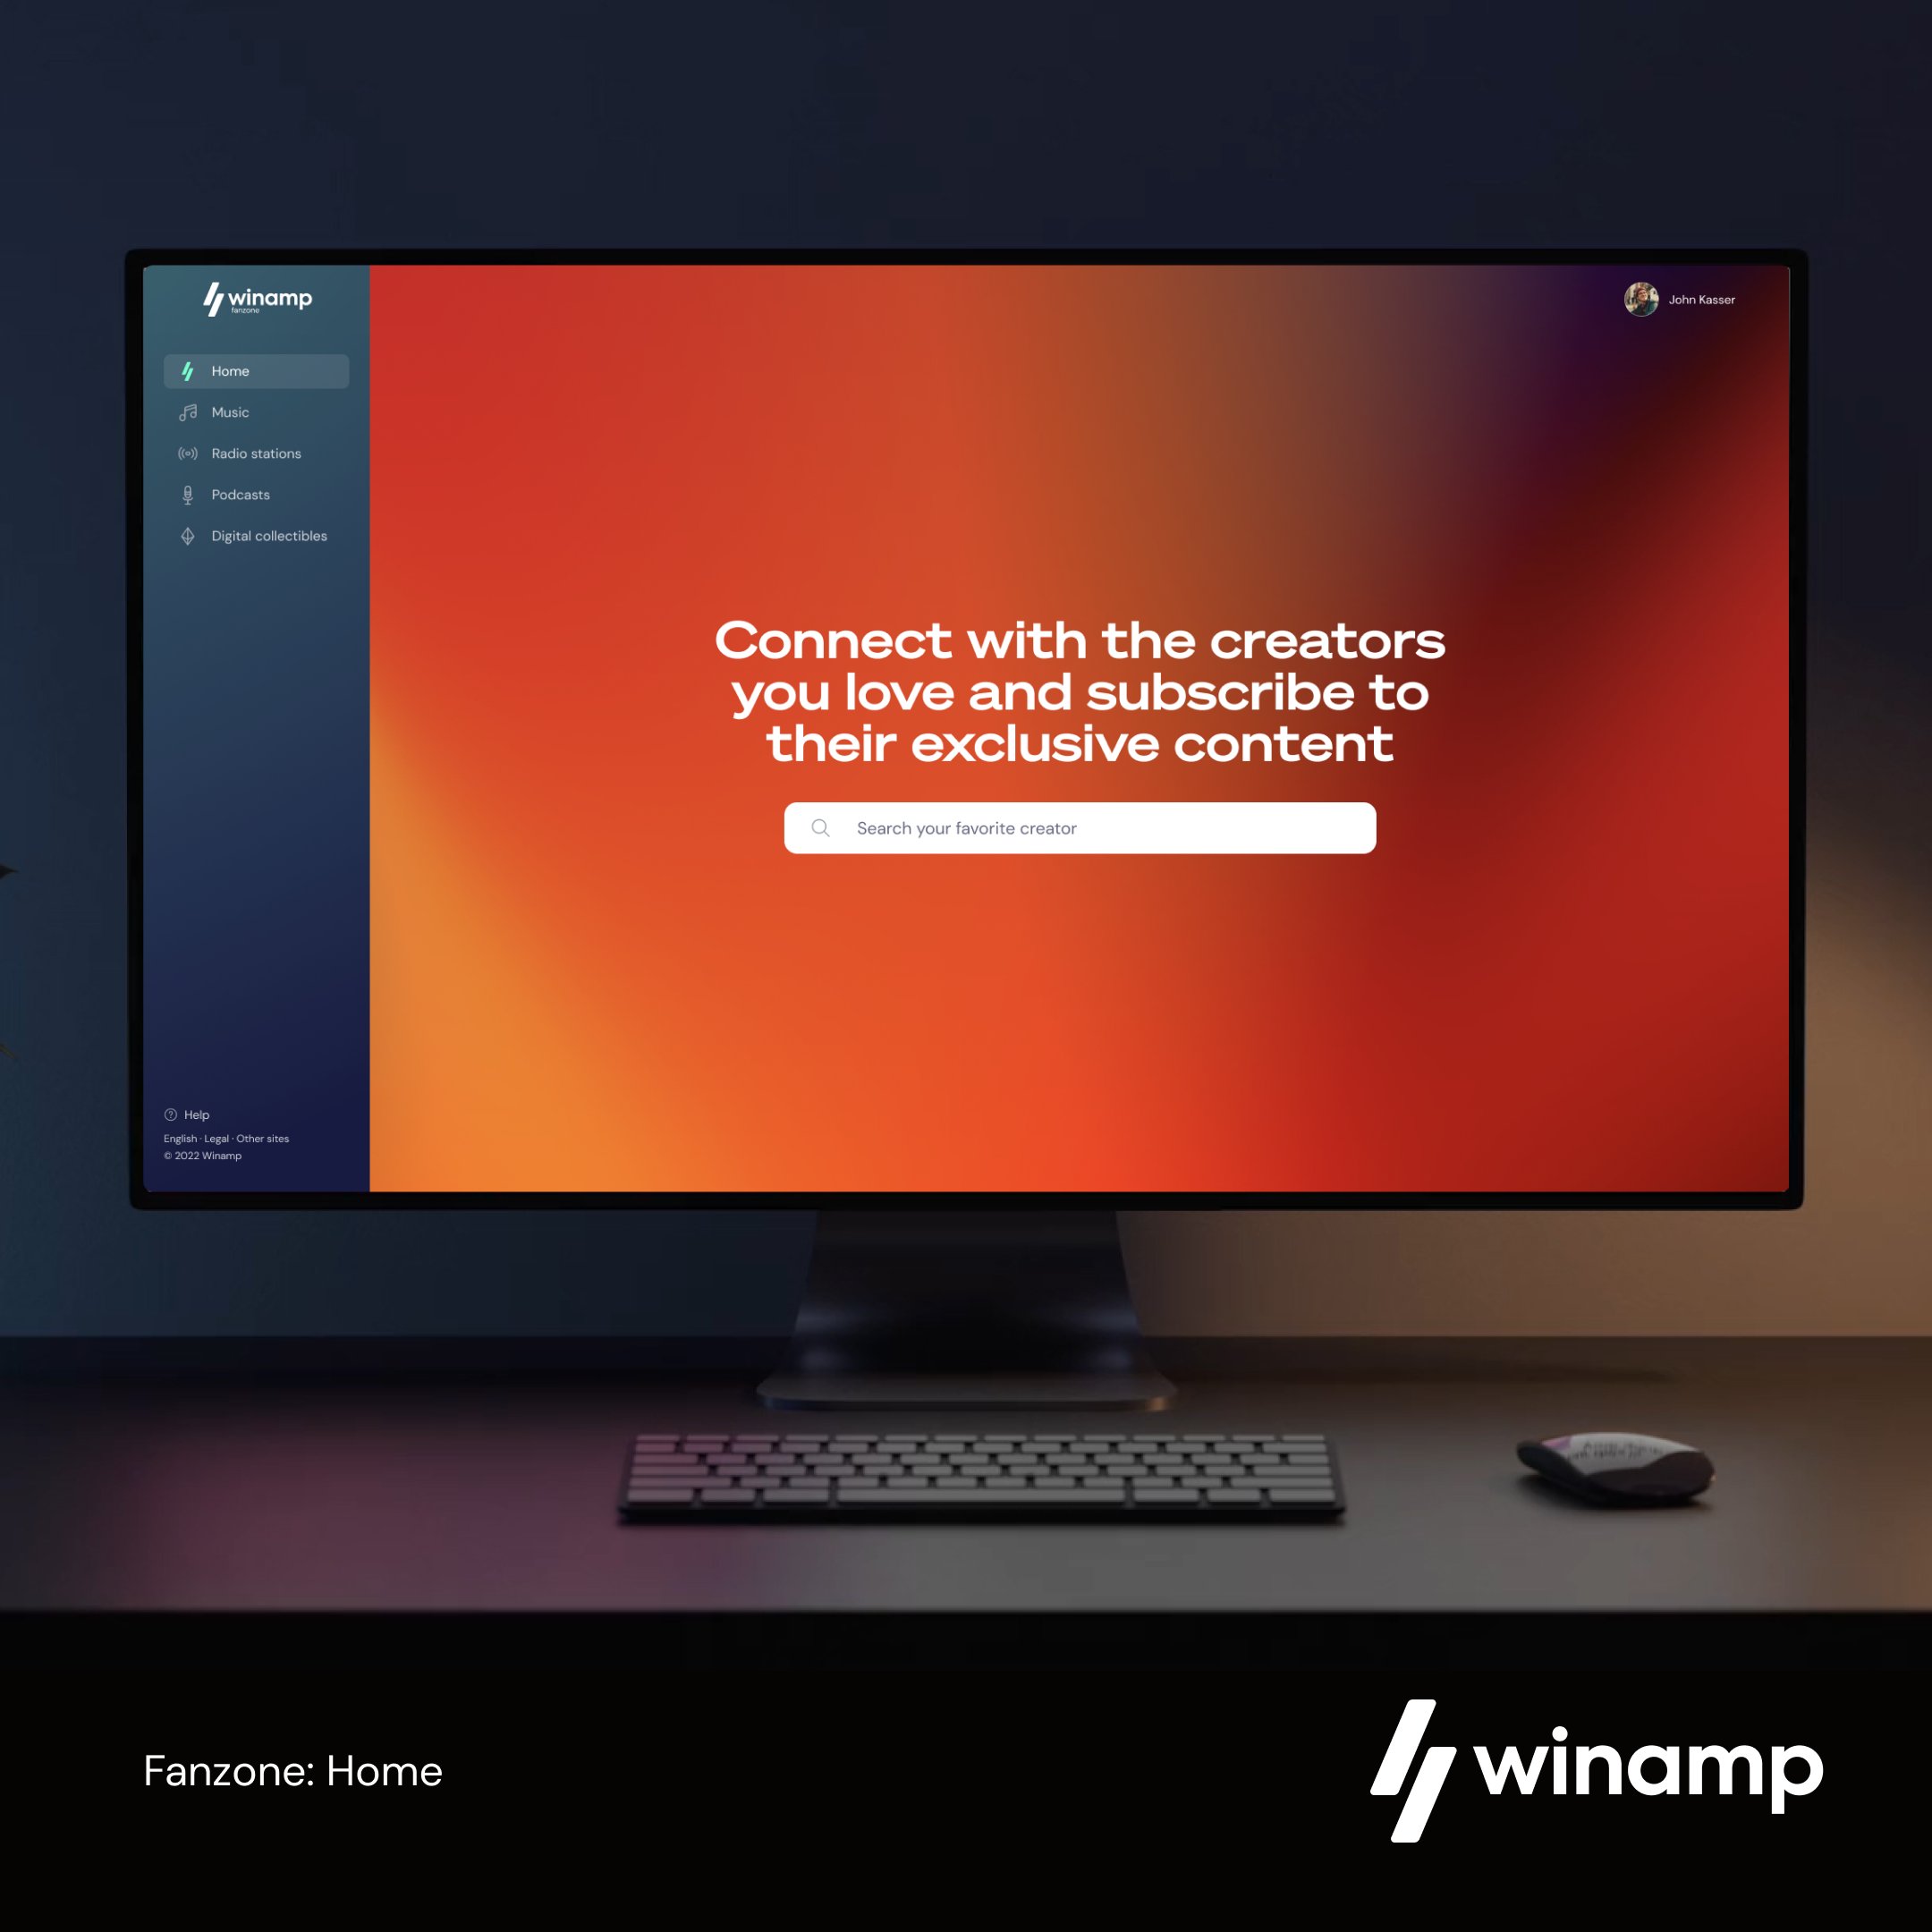 老牌音乐播放器Winamp预告今天发布全新版本